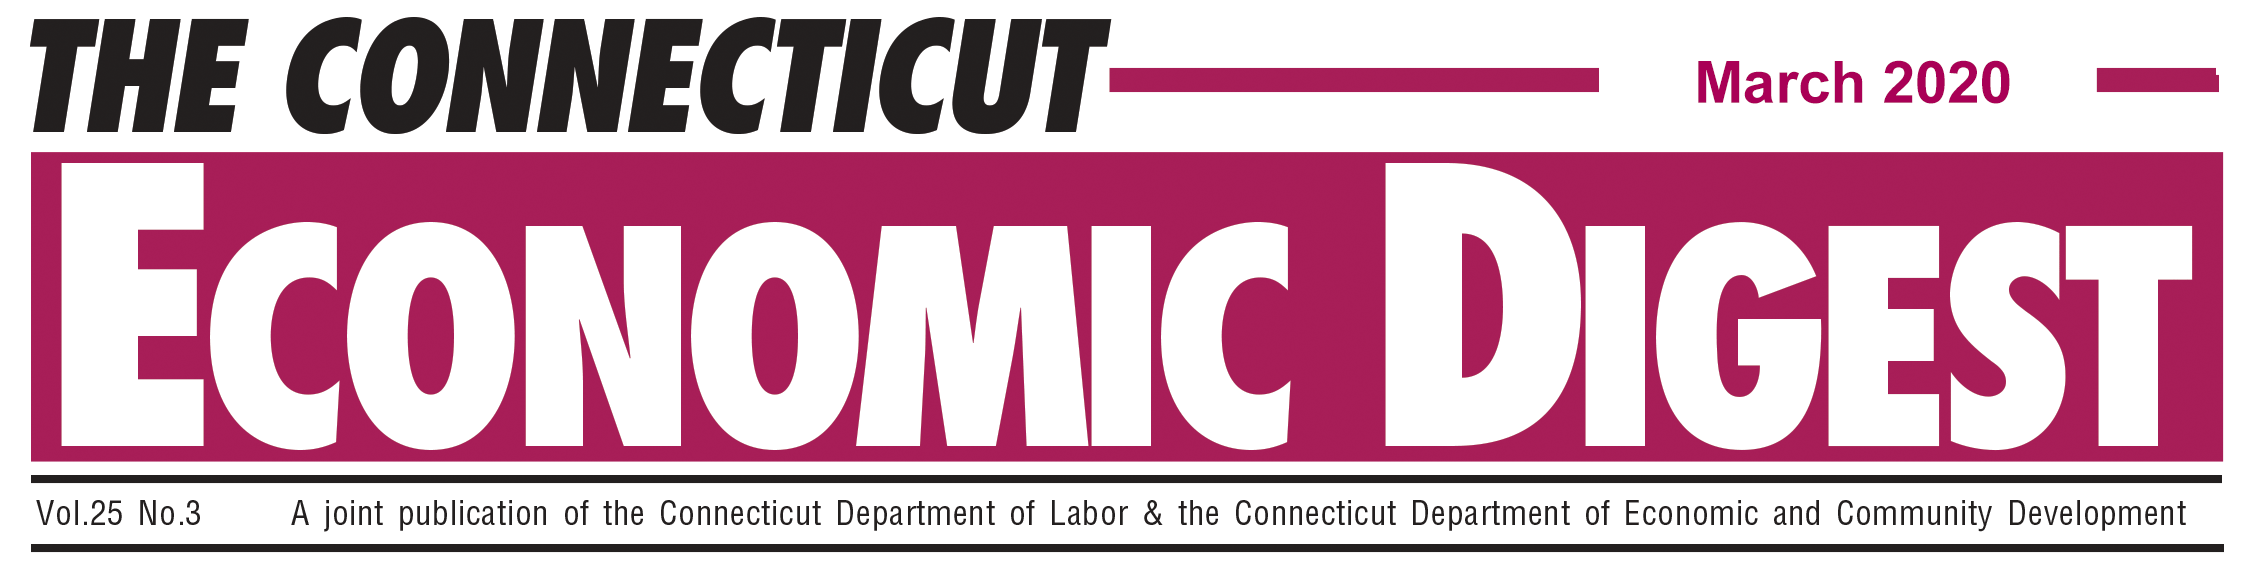 March 2020 Connecticut Economic Digest